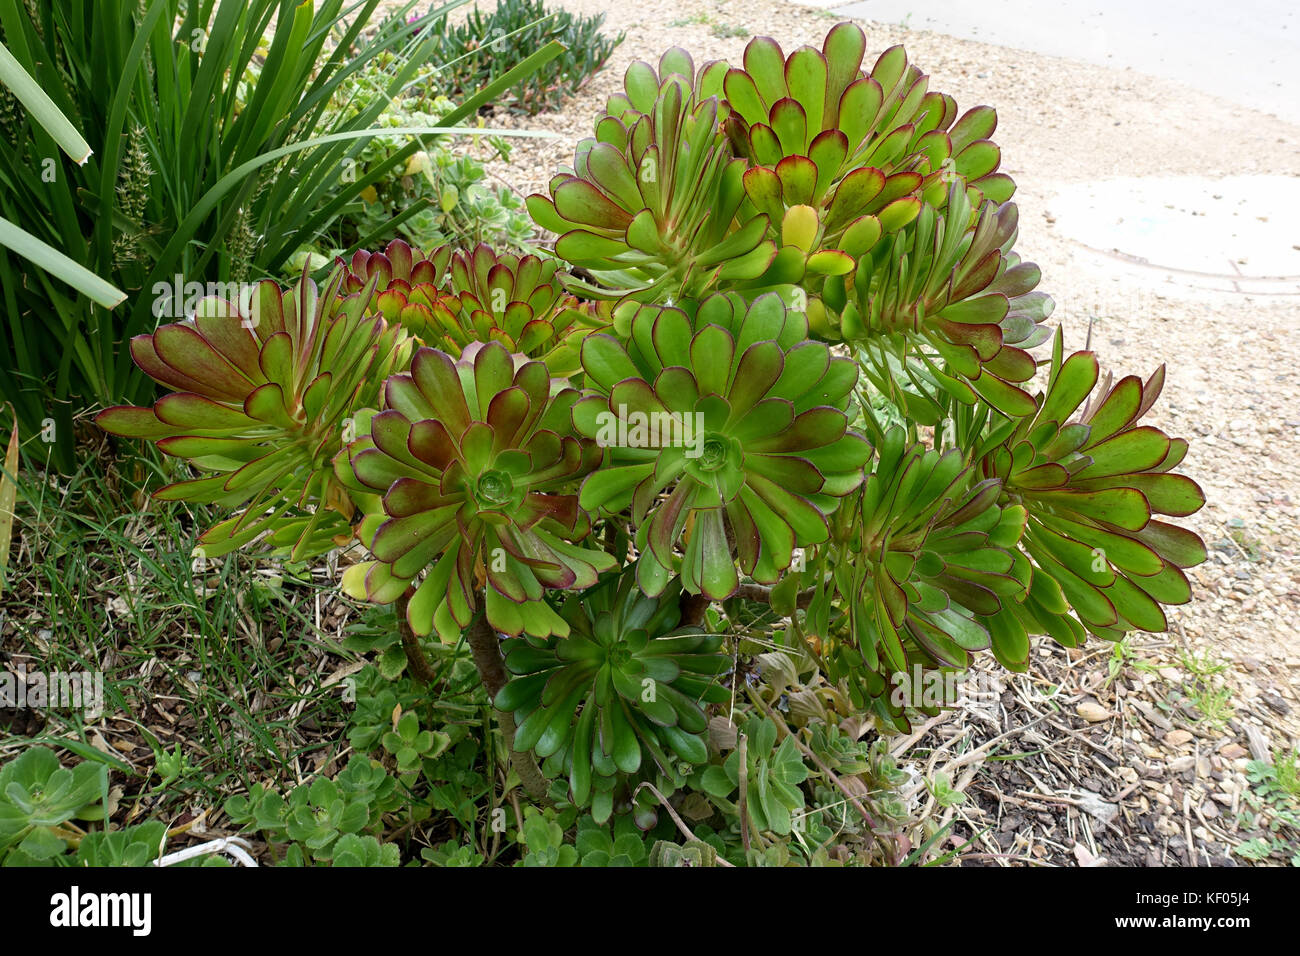 Aeonium arboreum Atropurpureum growing in the ground Stock Photo